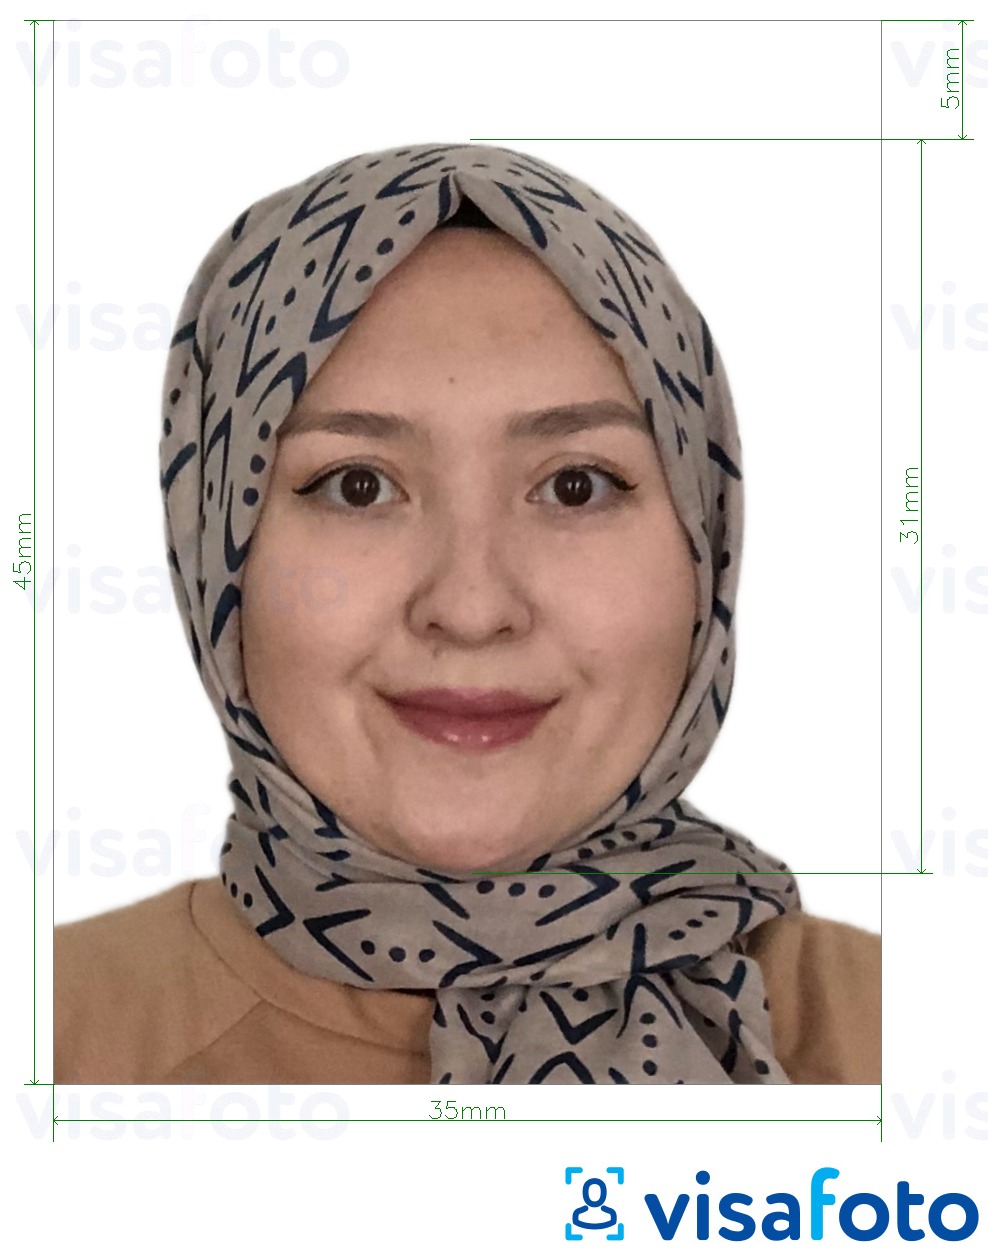  Malaisia ​​Visa 35x45 mm valge taust fotonäidis koos täpse infoga mõõtude kohta.